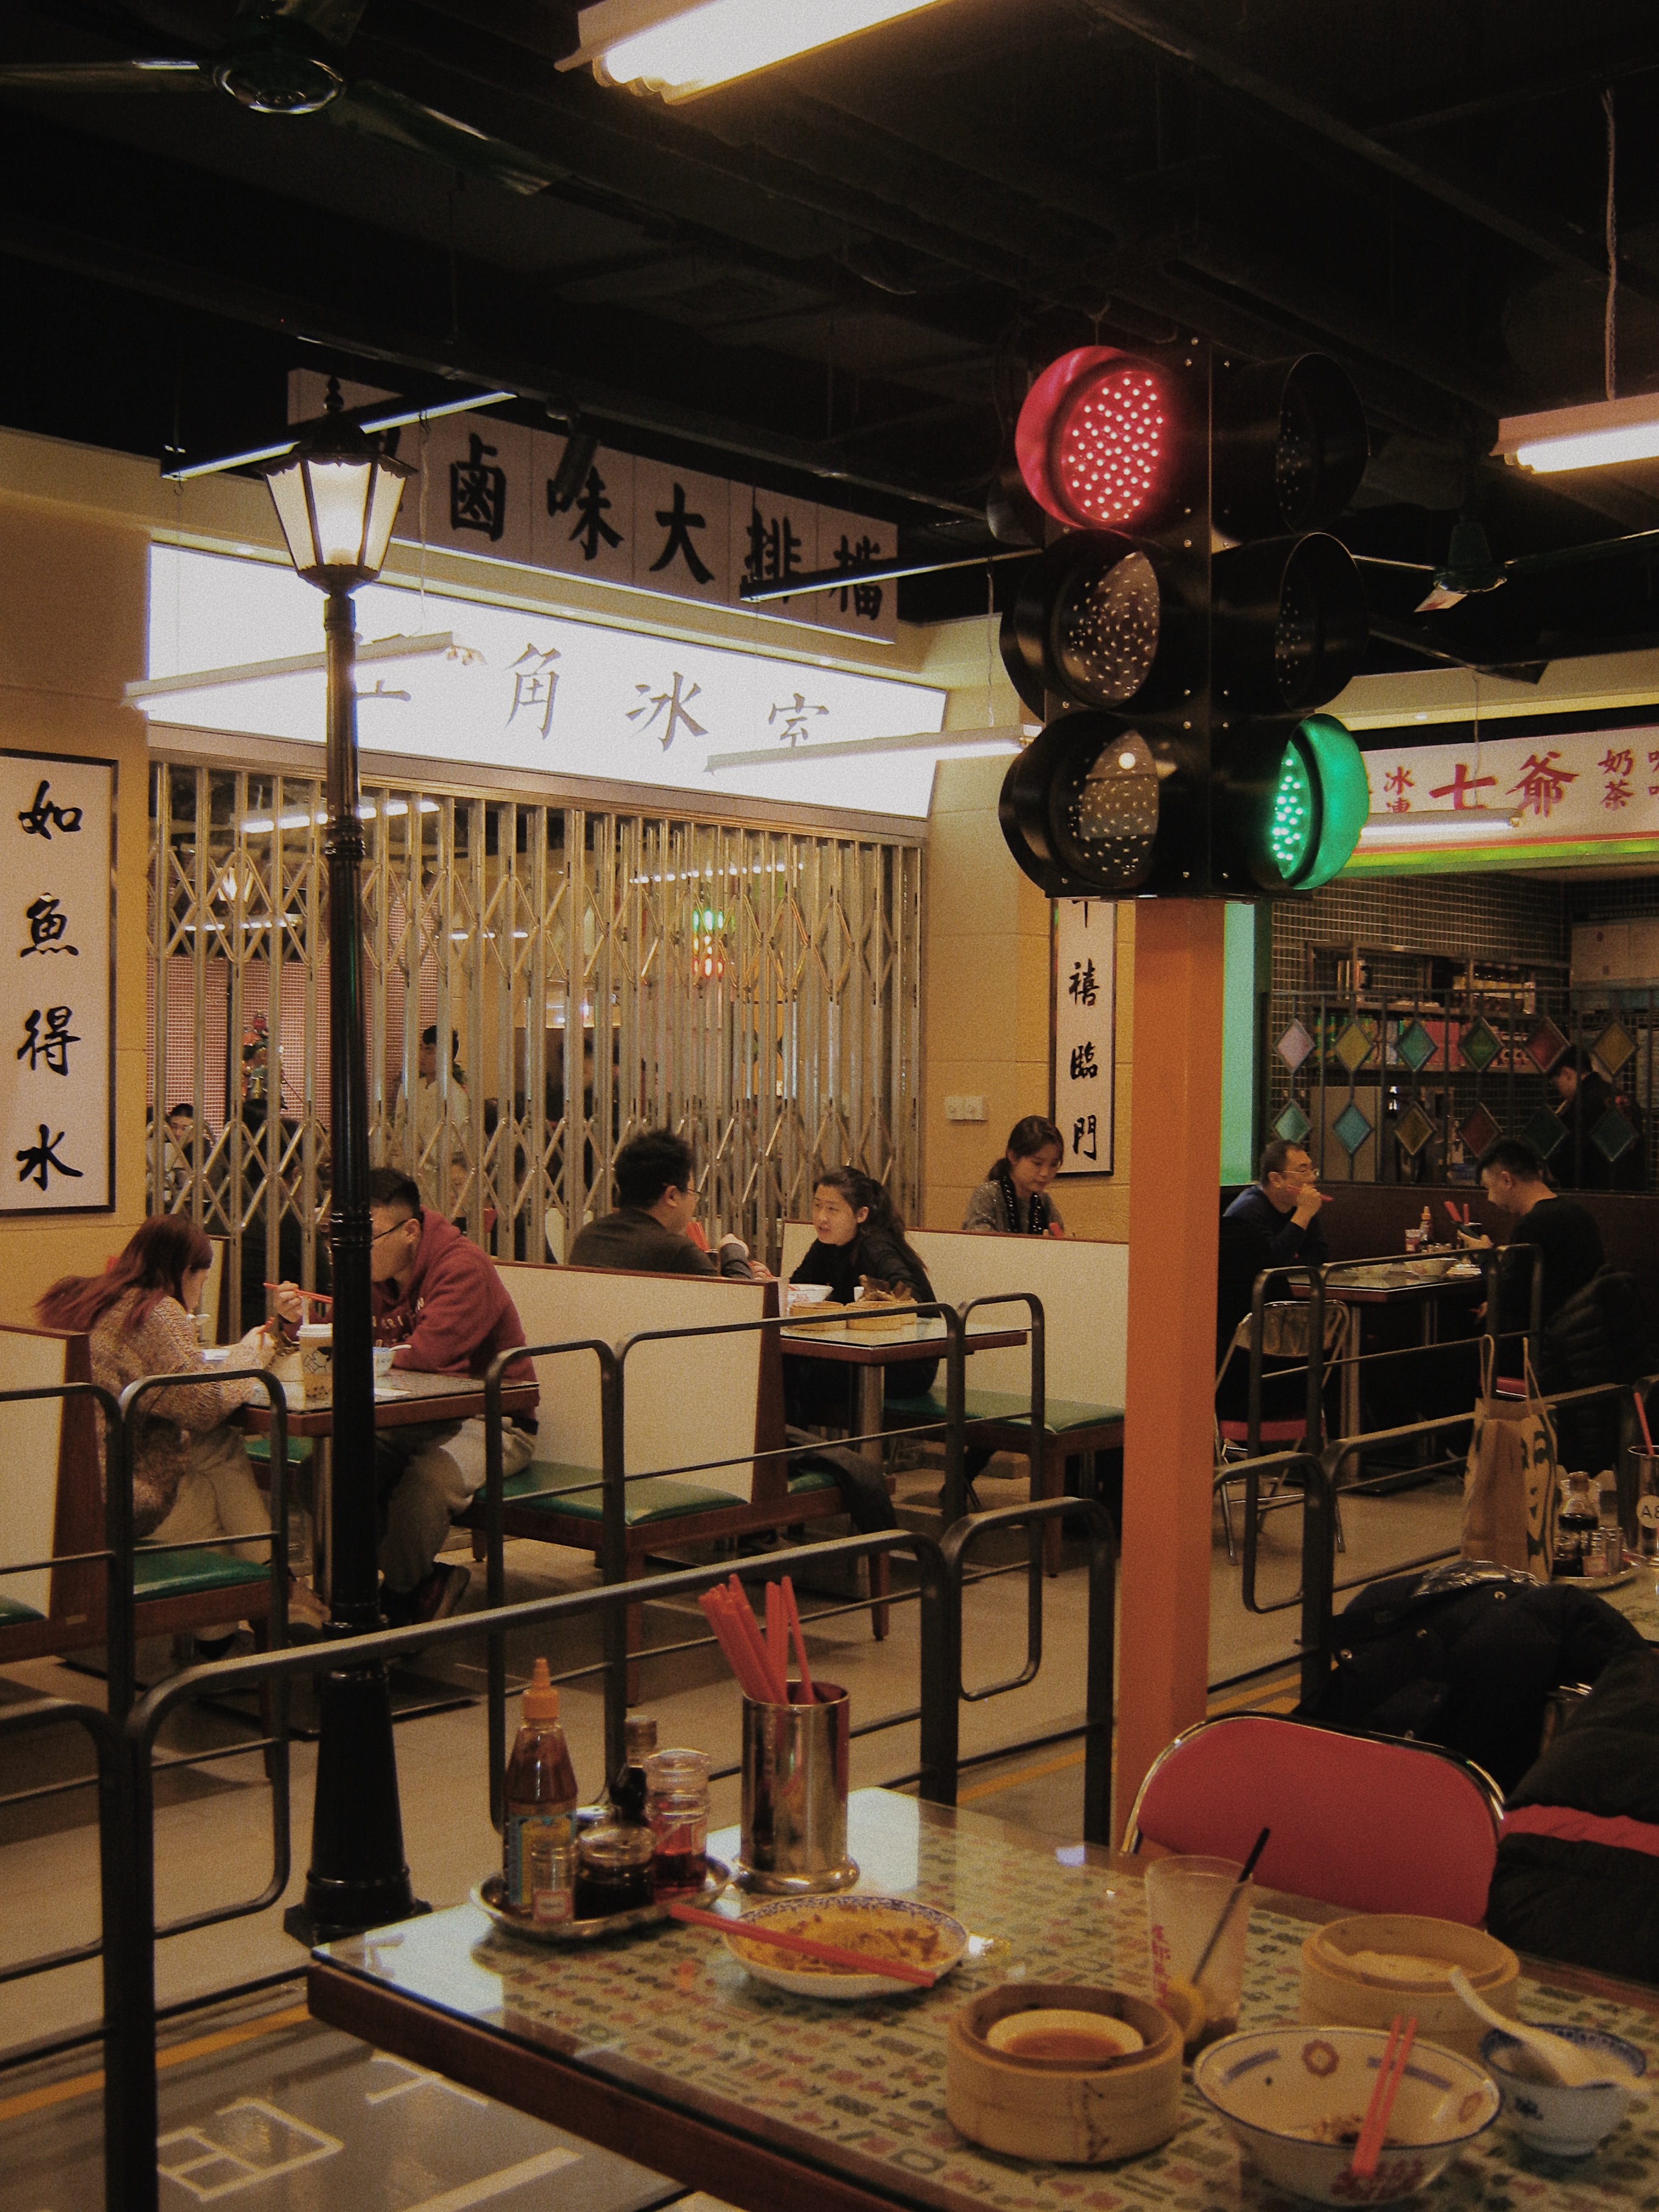 94七爷清汤腩港风茶餐厅装修风格,在里面吃饭仿佛在拍tvb哈哈哈哈!